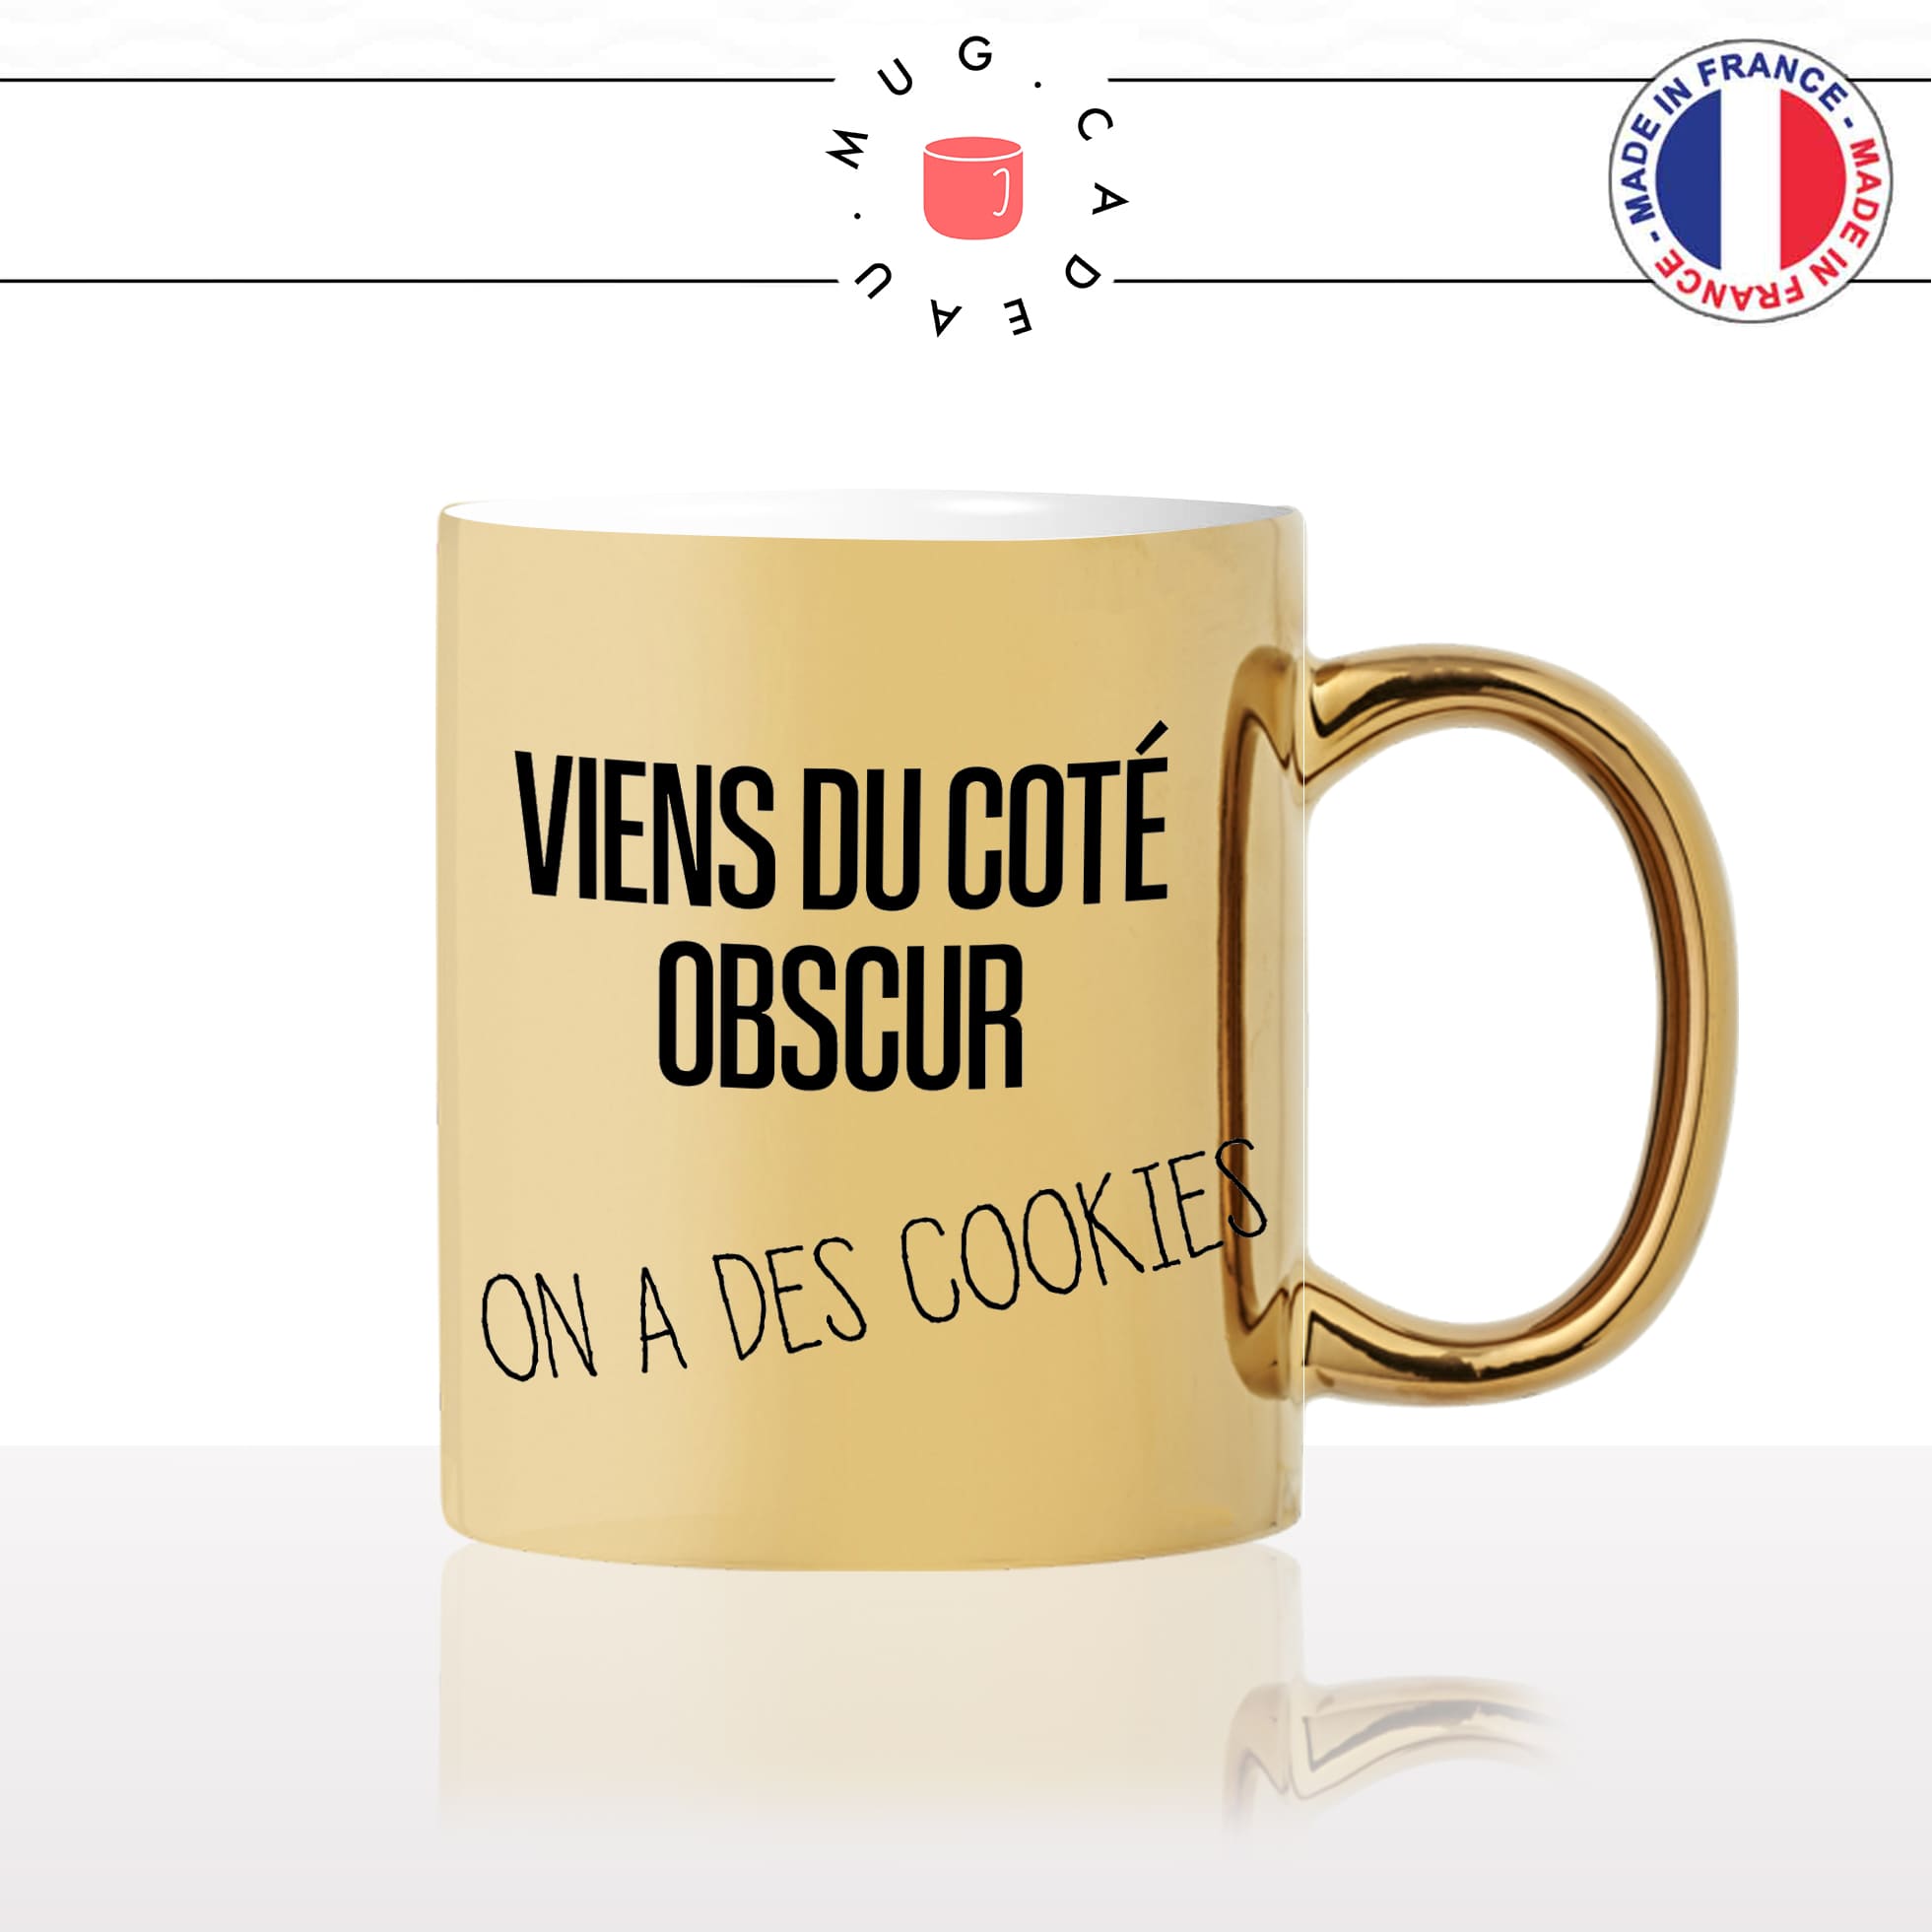 mug-tasse-or-gold-doré-viens-du-coté-obscur-on-a-des-cookies-gouter-starwars-film-parodie-humour-idée-cadeau-originale-fun-unique2